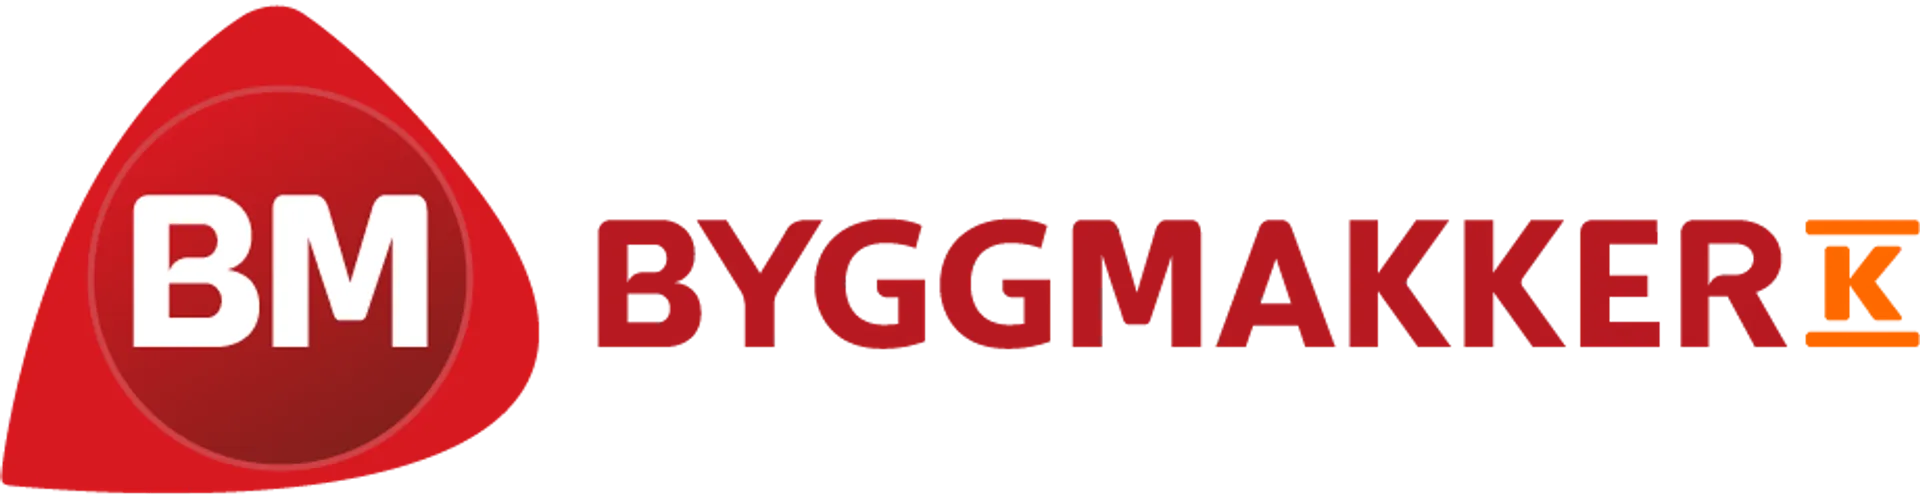 BYGGMAKKER logo